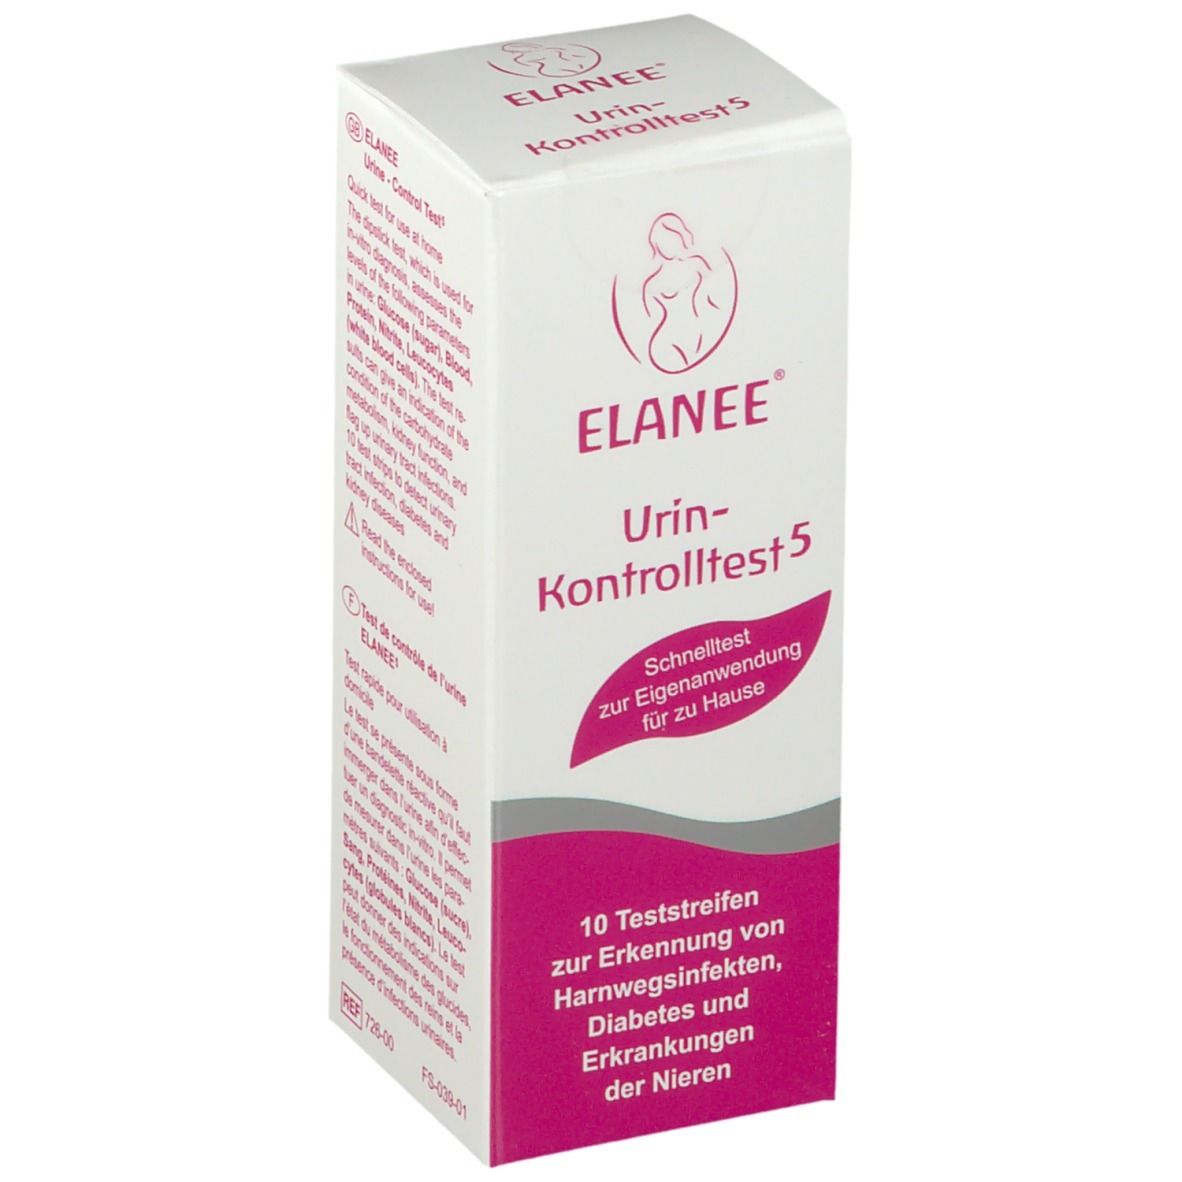 ELANEE® Urin-Kontrolltest